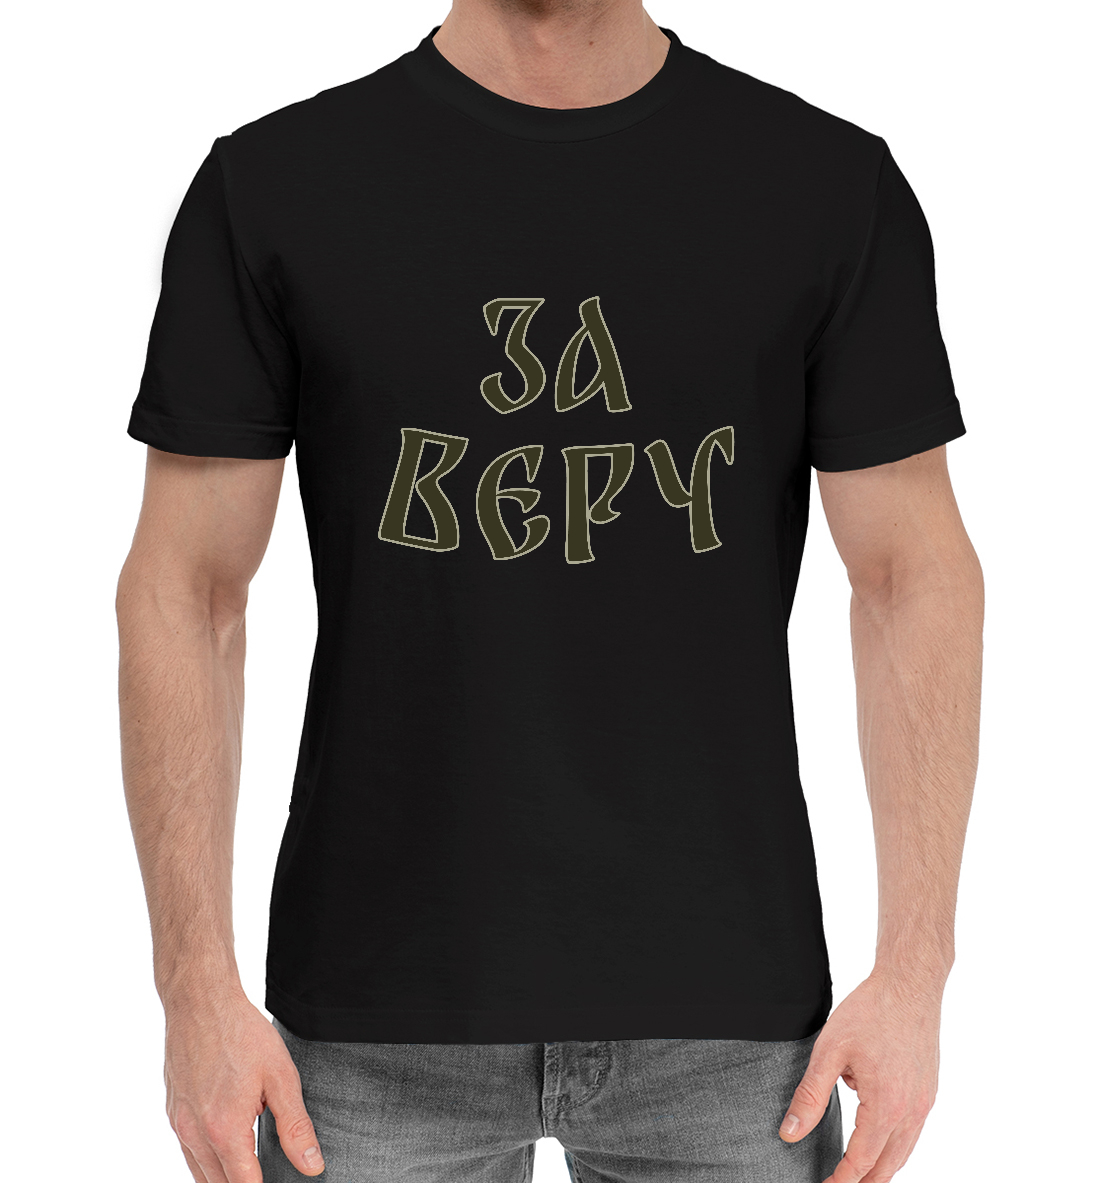 Мужская Хлопковая футболка с принтом За веру, артикул RTP-914847-hfu-2mp